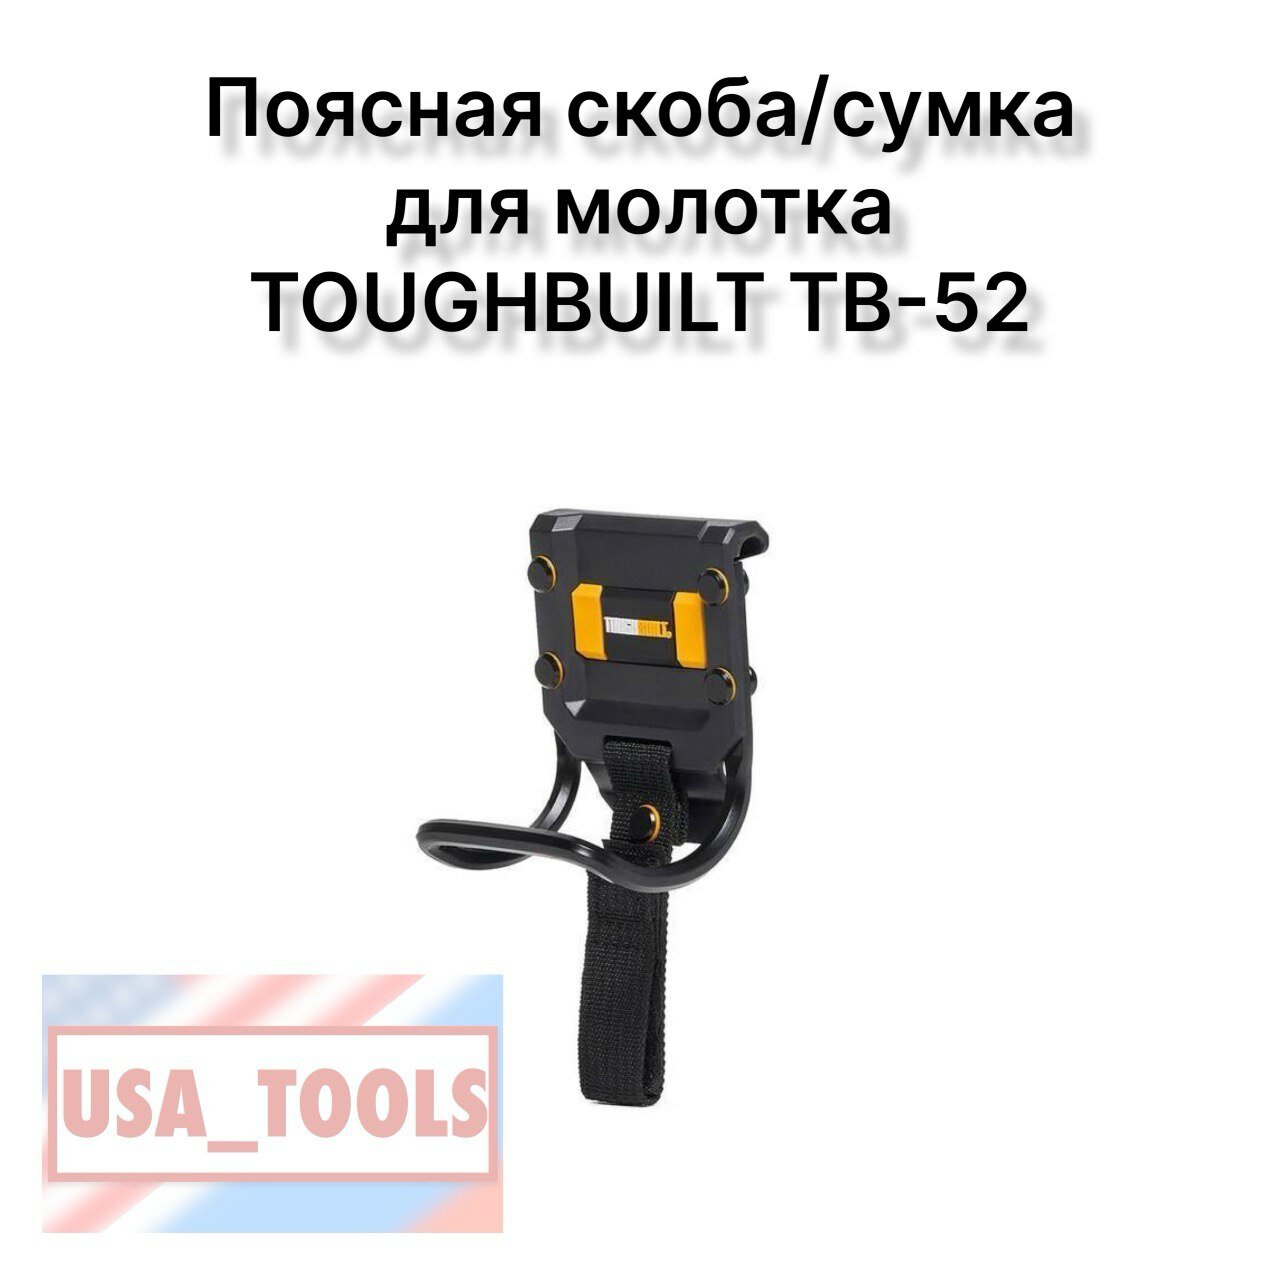 Поясная скоба/сумка для молотка TOUGHBUILT TB-52